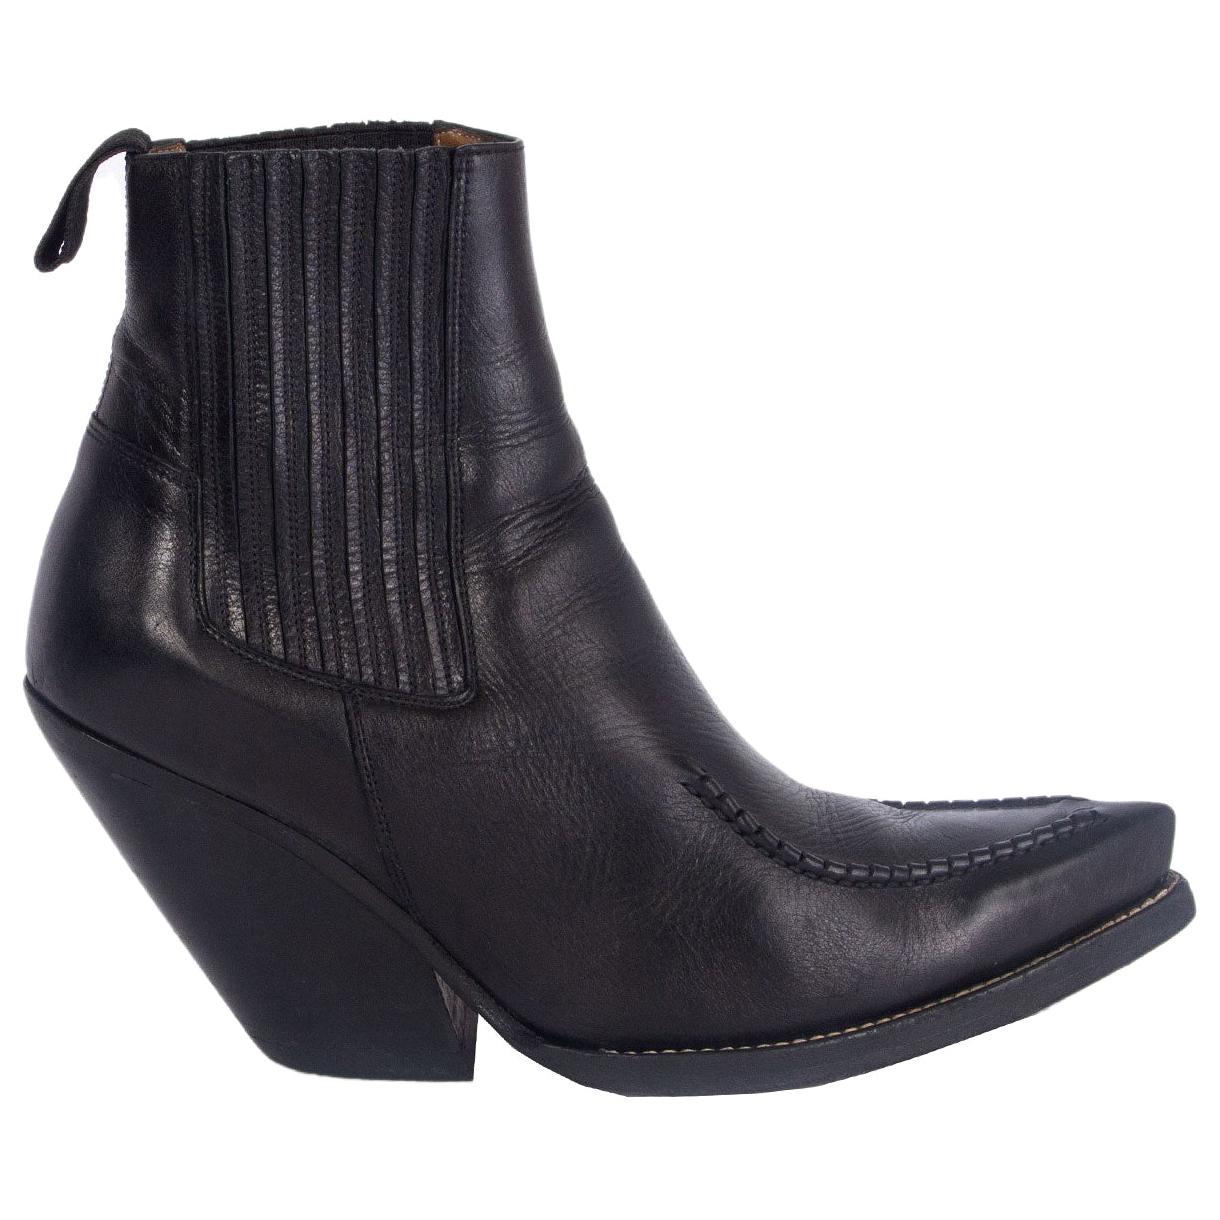 CELINE black leather SANTIAG Western Cowboy Ankle Boots Shoes 39